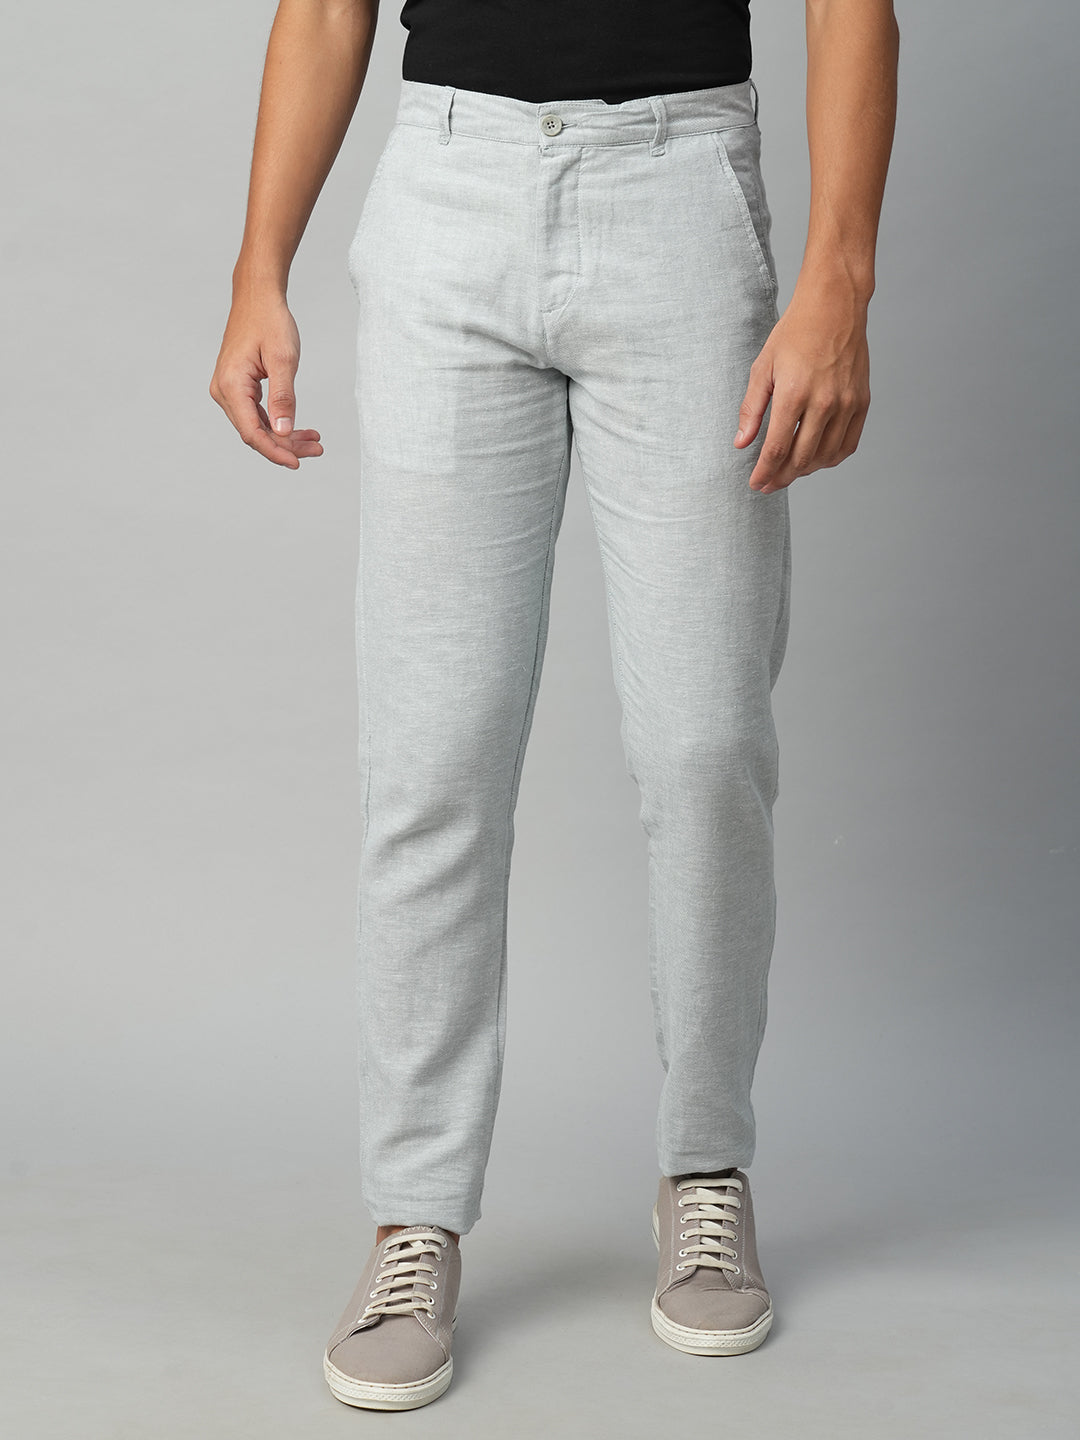 Men's Cotton Linen  Grey Slim Fit Pant